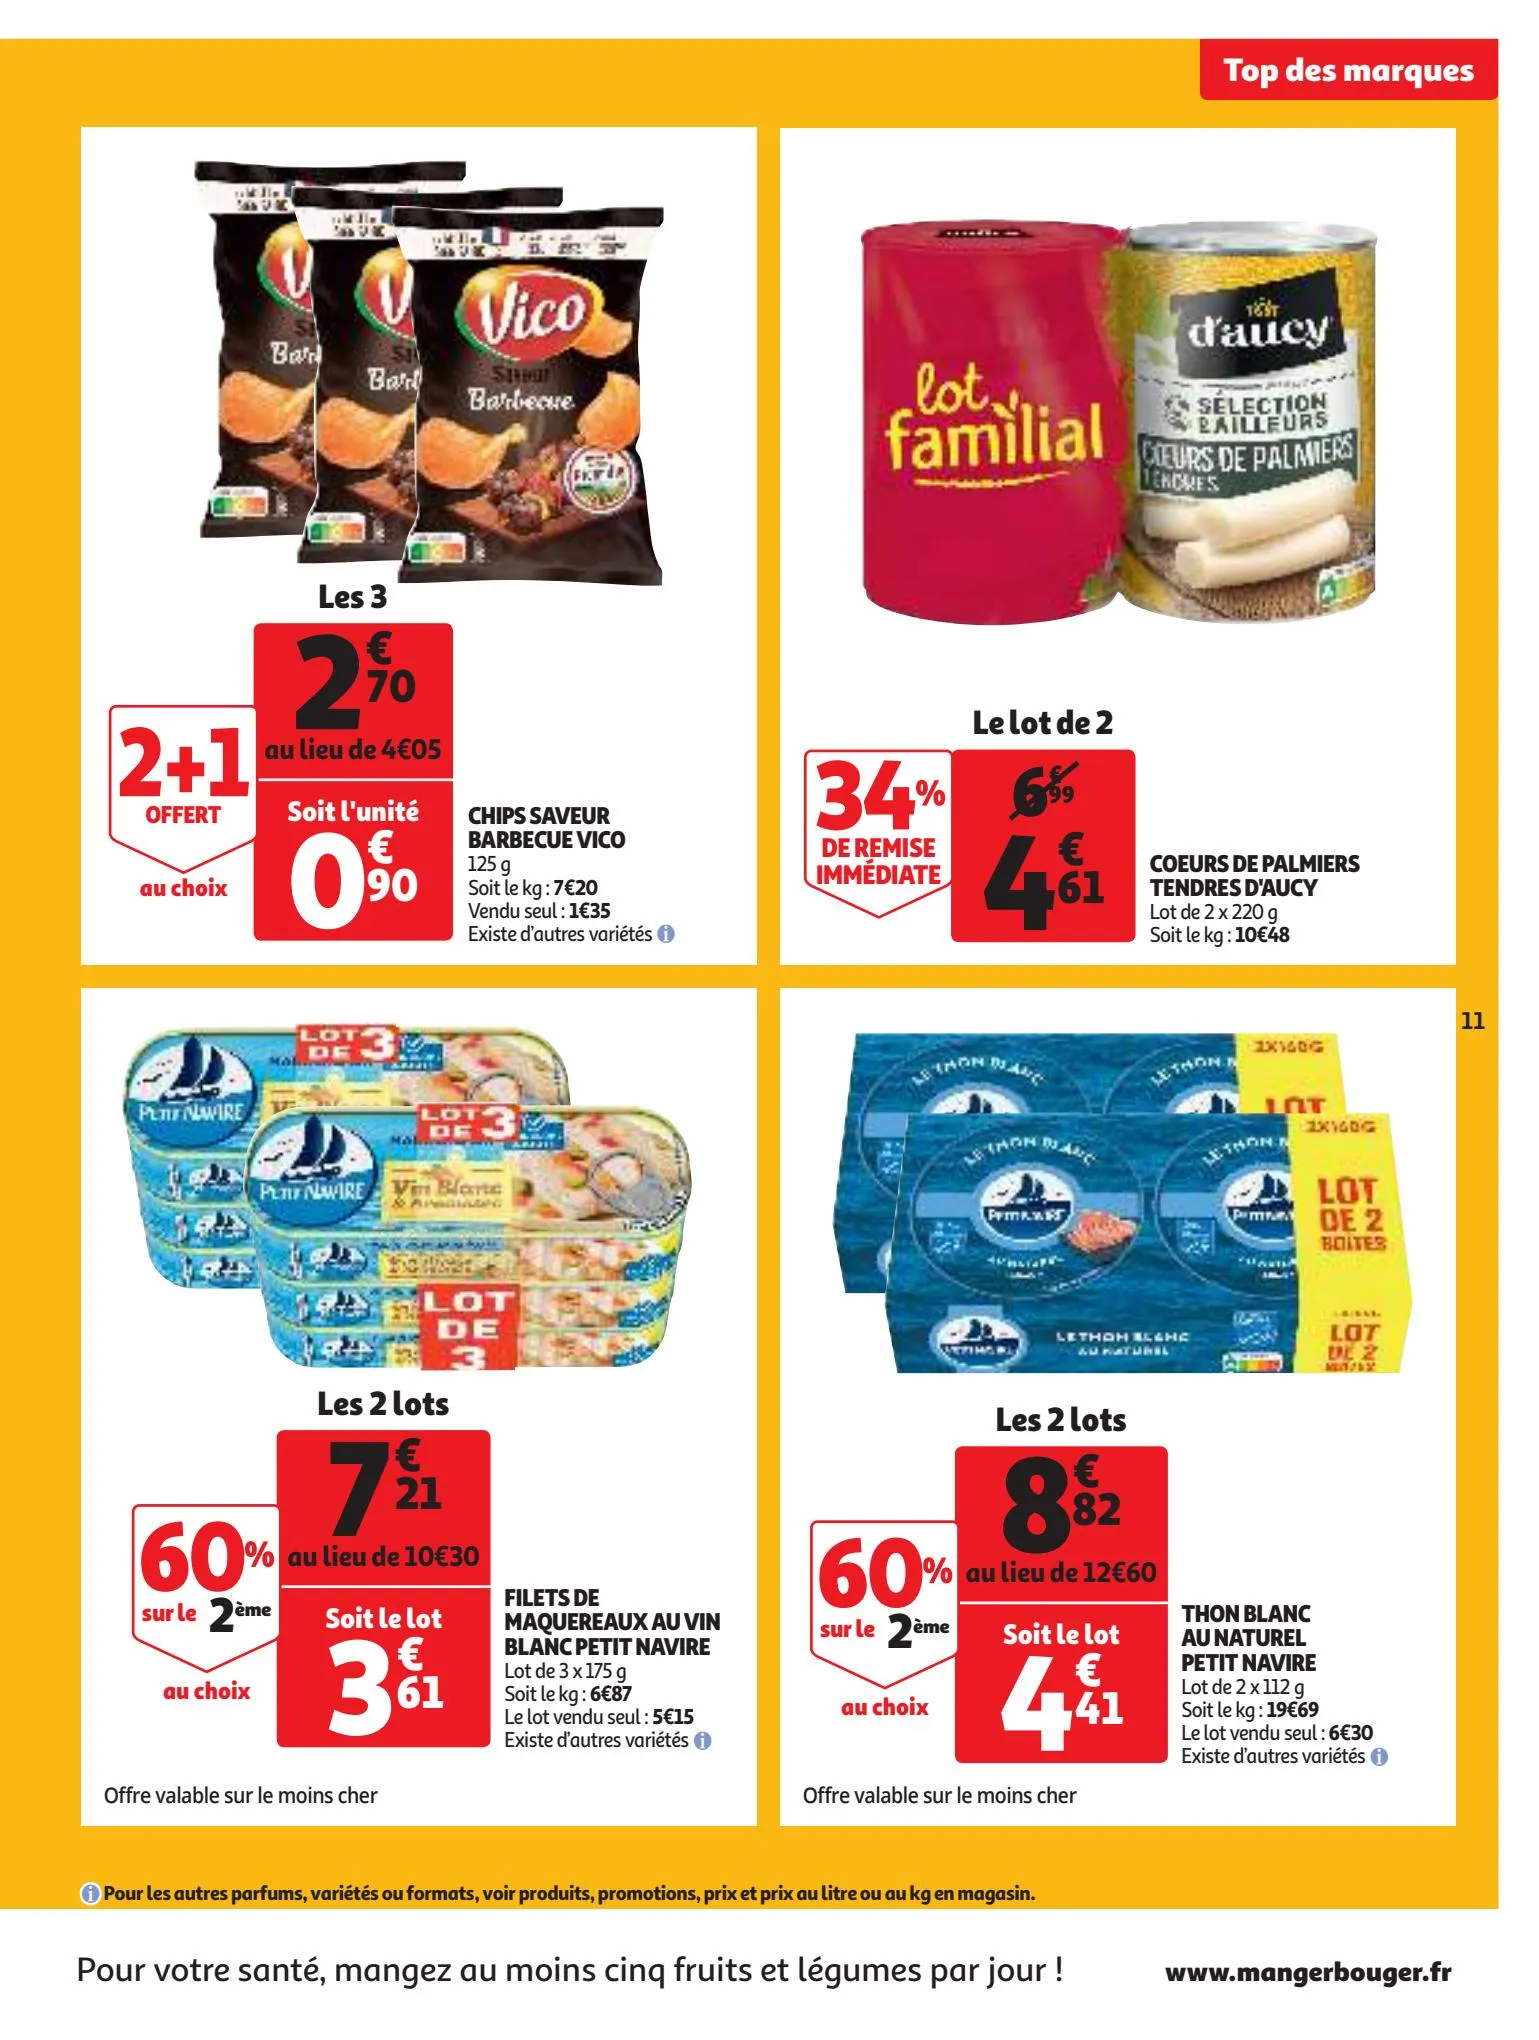 Catalogue Un grand choix de marques dans votre supermarché !, page 00011